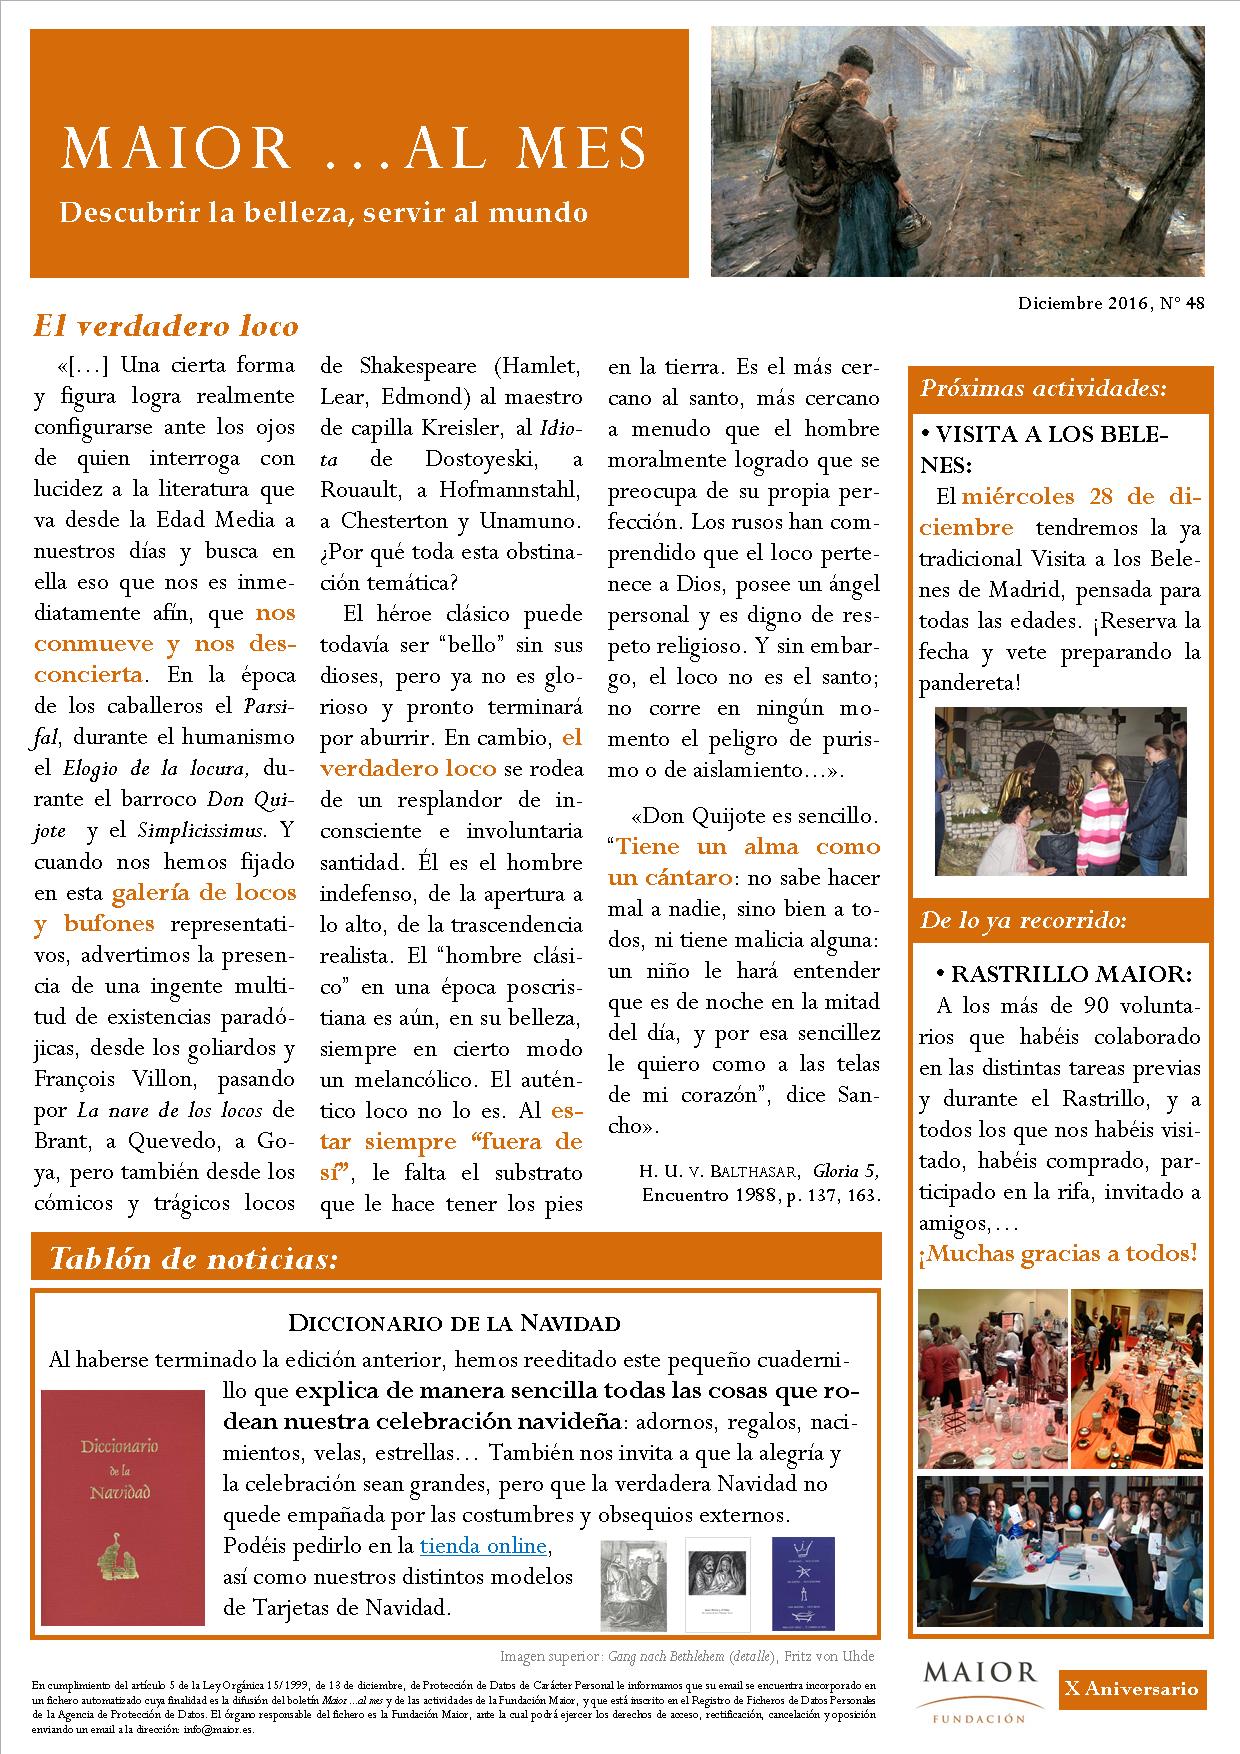 Boletín mensual de noticias y actividades de la Fundación Maior. Edición de diciembre 2016